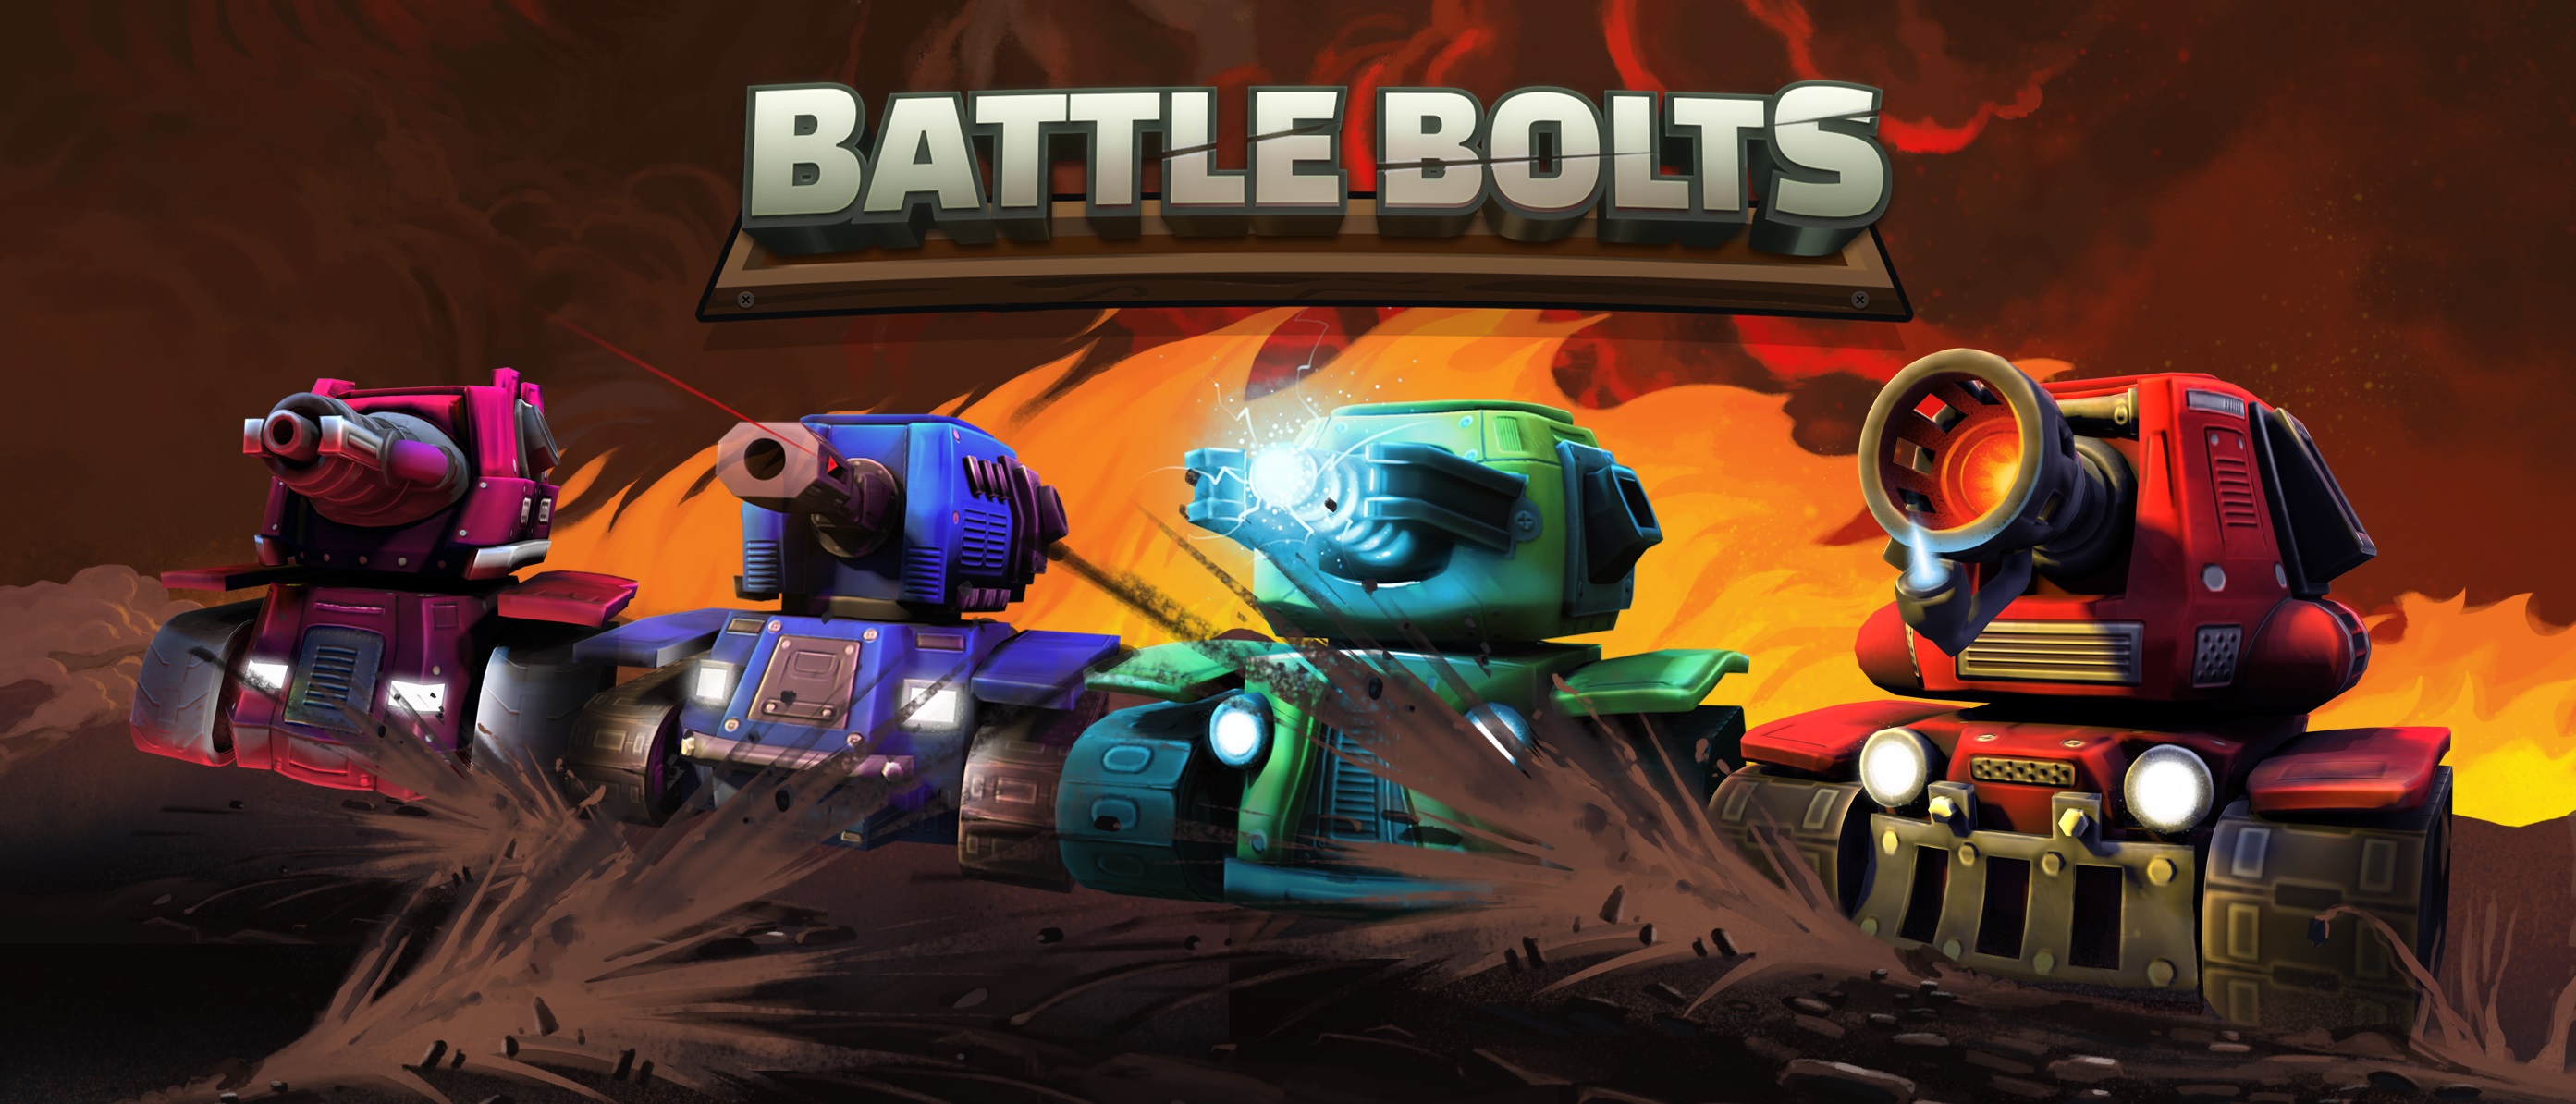 Battle Bolts